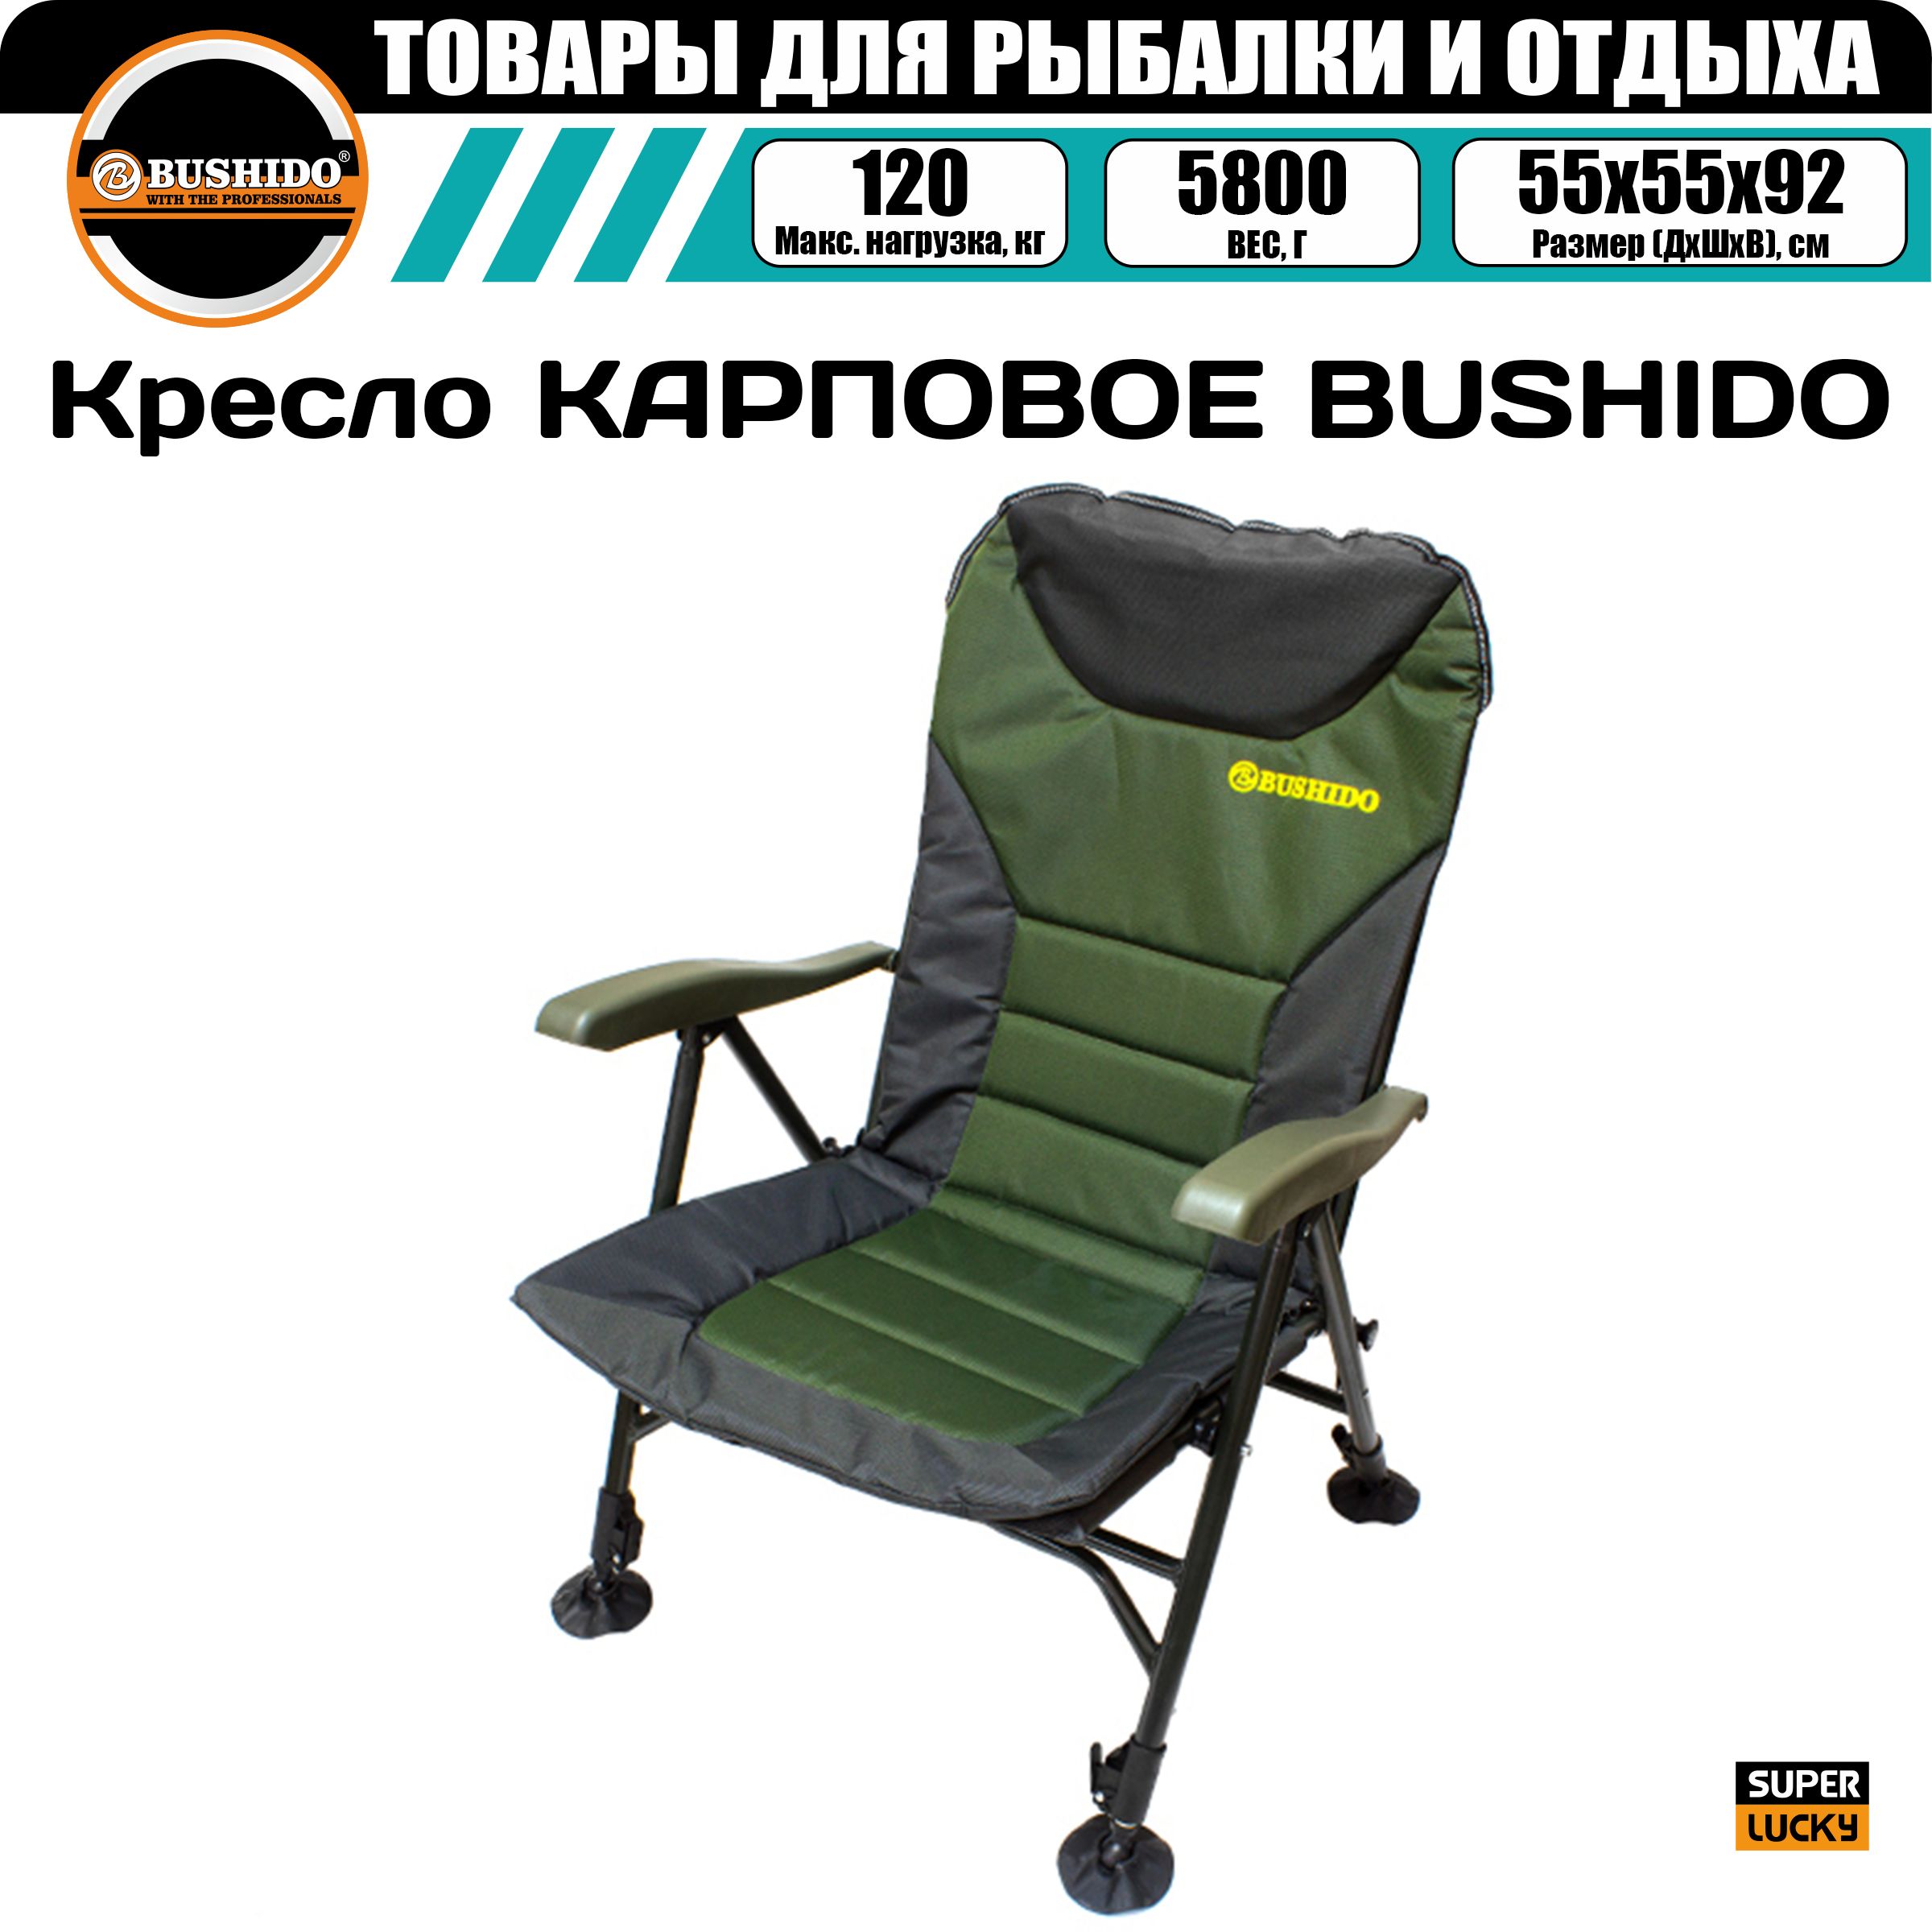 Кресло карповое BUSHIDO c регулируемыми подлокотниками, складное, туристическое, походное